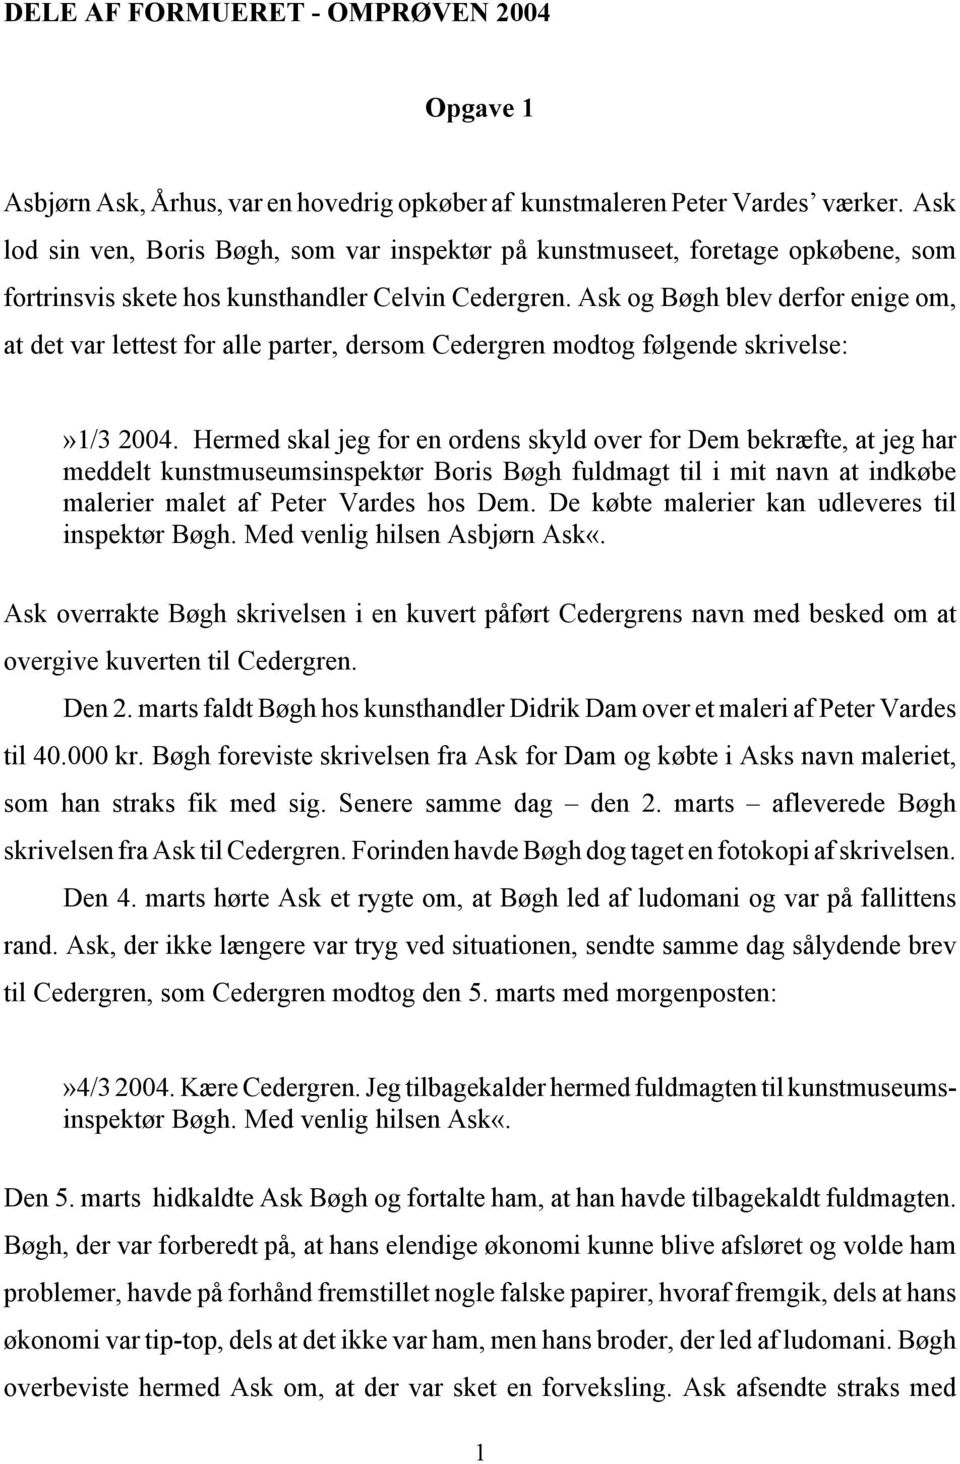 Ask og Bøgh blev derfor enige om, at det var lettest for alle parter, dersom Cedergren modtog følgende skrivelse:»1/3 2004.